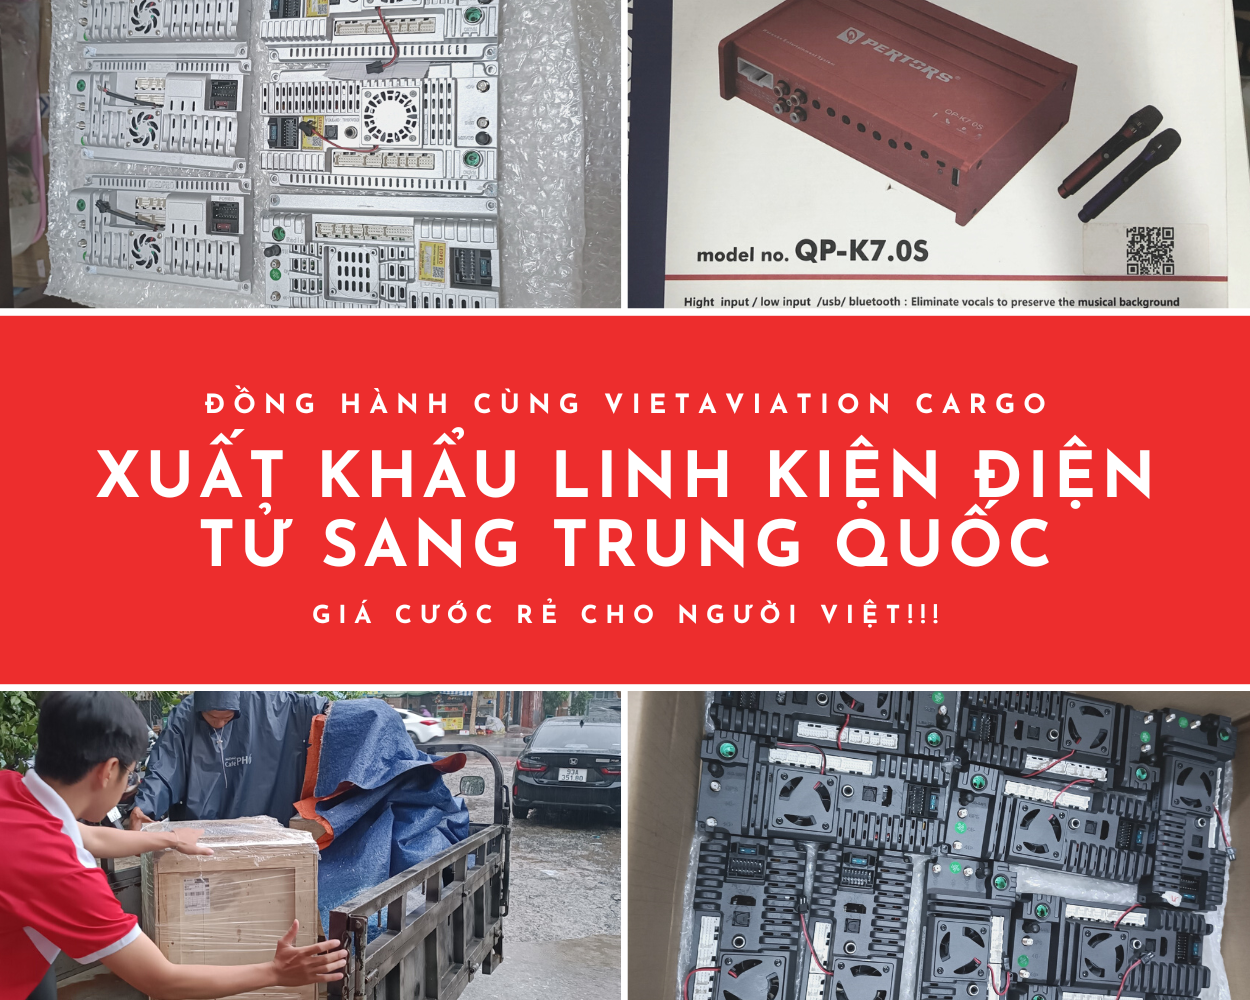 VAC - Xuất khẩu linh kiện điện tử sang Trung Quốc